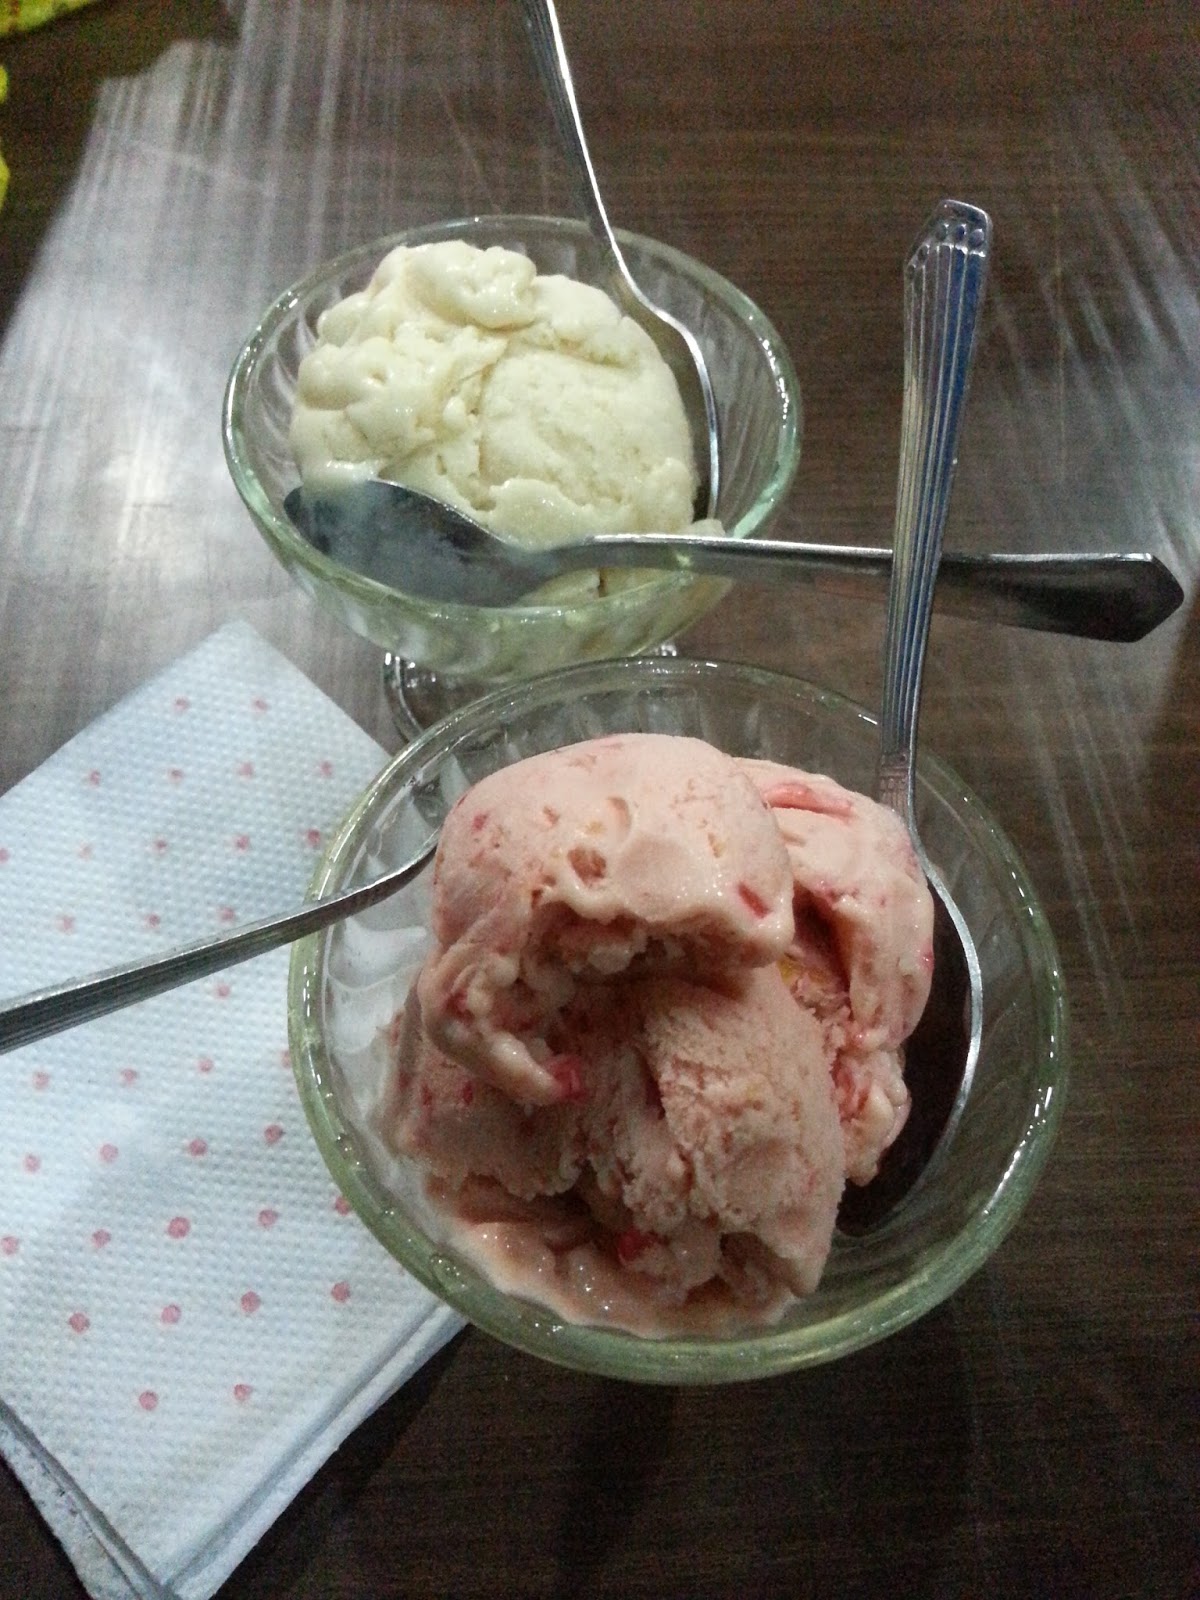 Fresh fruit ice cream at Taj Ice Cream